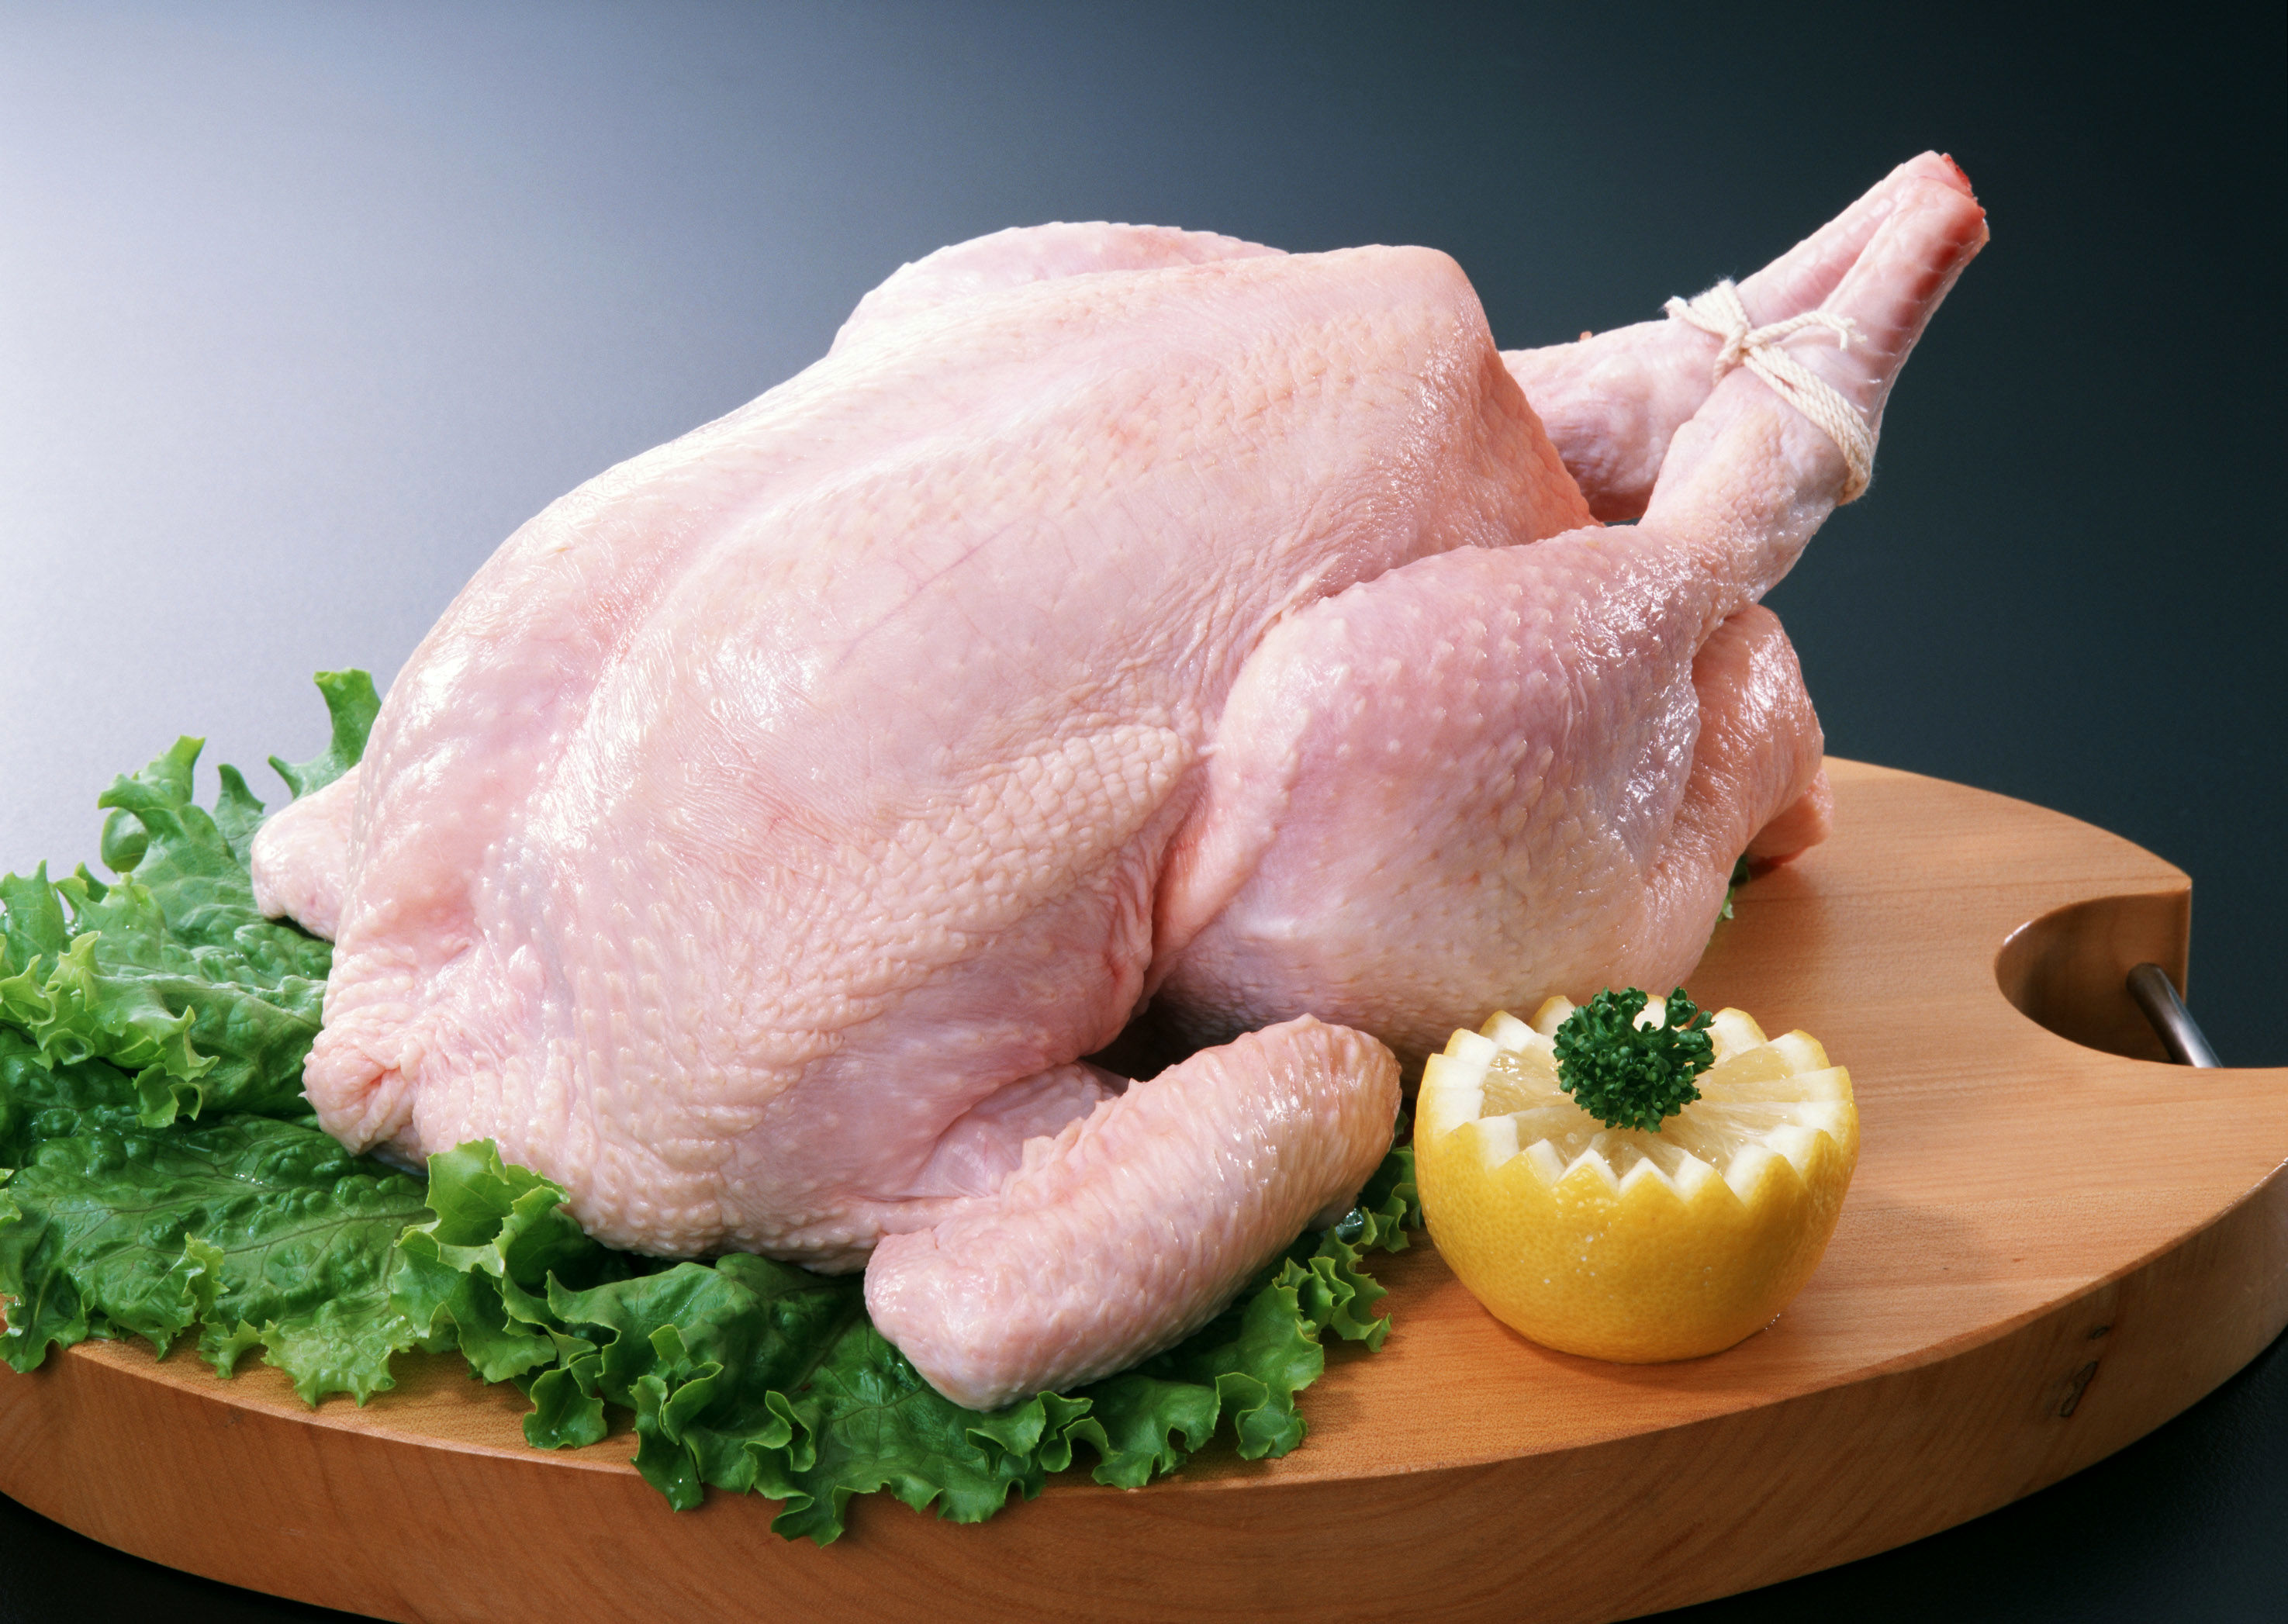 قیمت عرضه مرغ در بازار  10250 تومان/گران فروشی مرغداران در نتیجه ضعف نظارت یا قیمت نهایی بالا؟